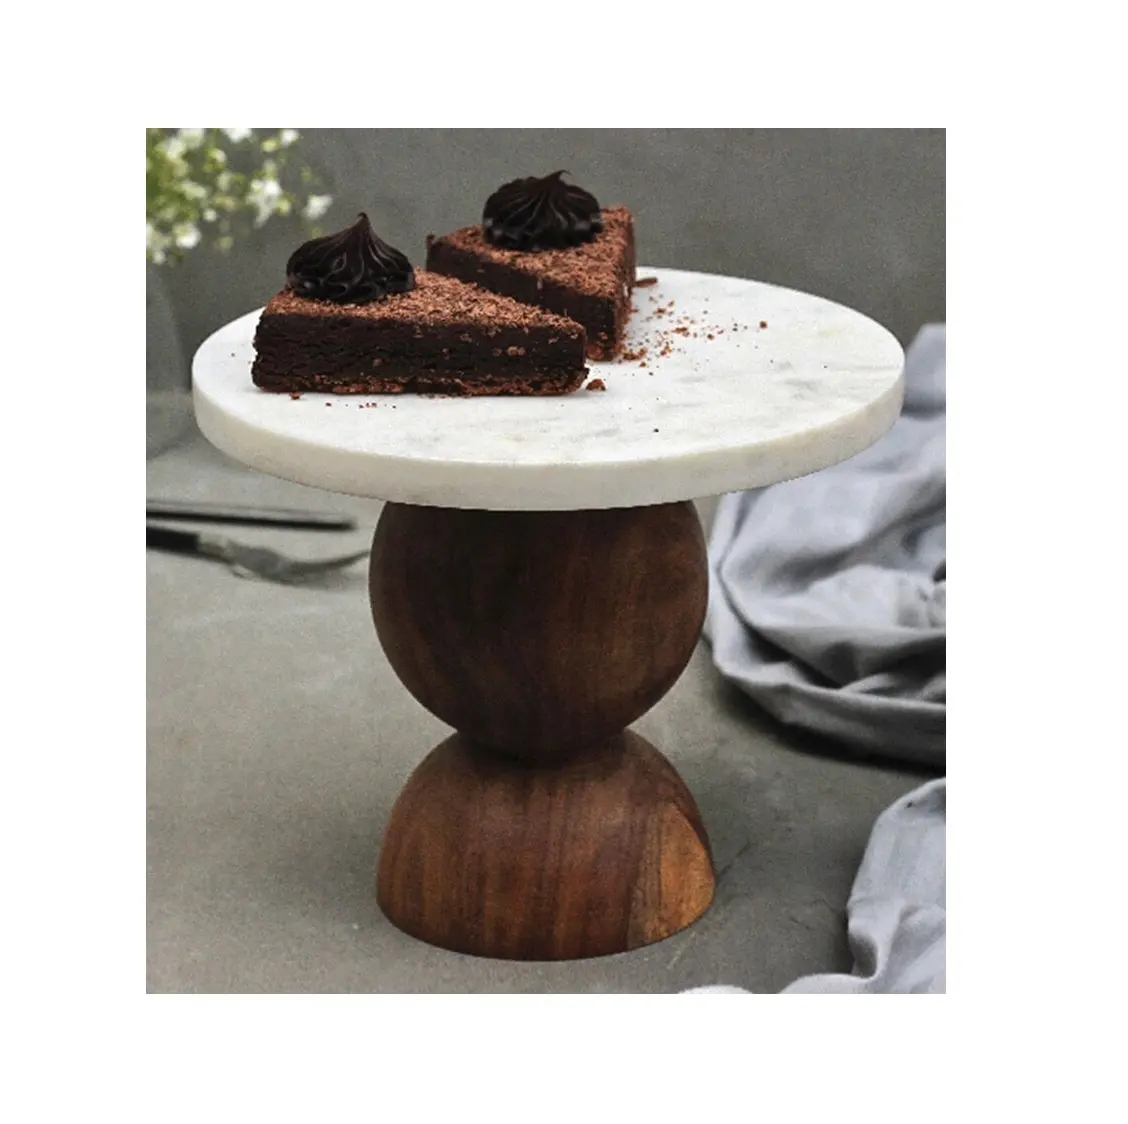 Holz und Marmor Neuestes Design Royal Cakes Stand Hersteller Großhändler Cake Cake Stand Home & Decoration